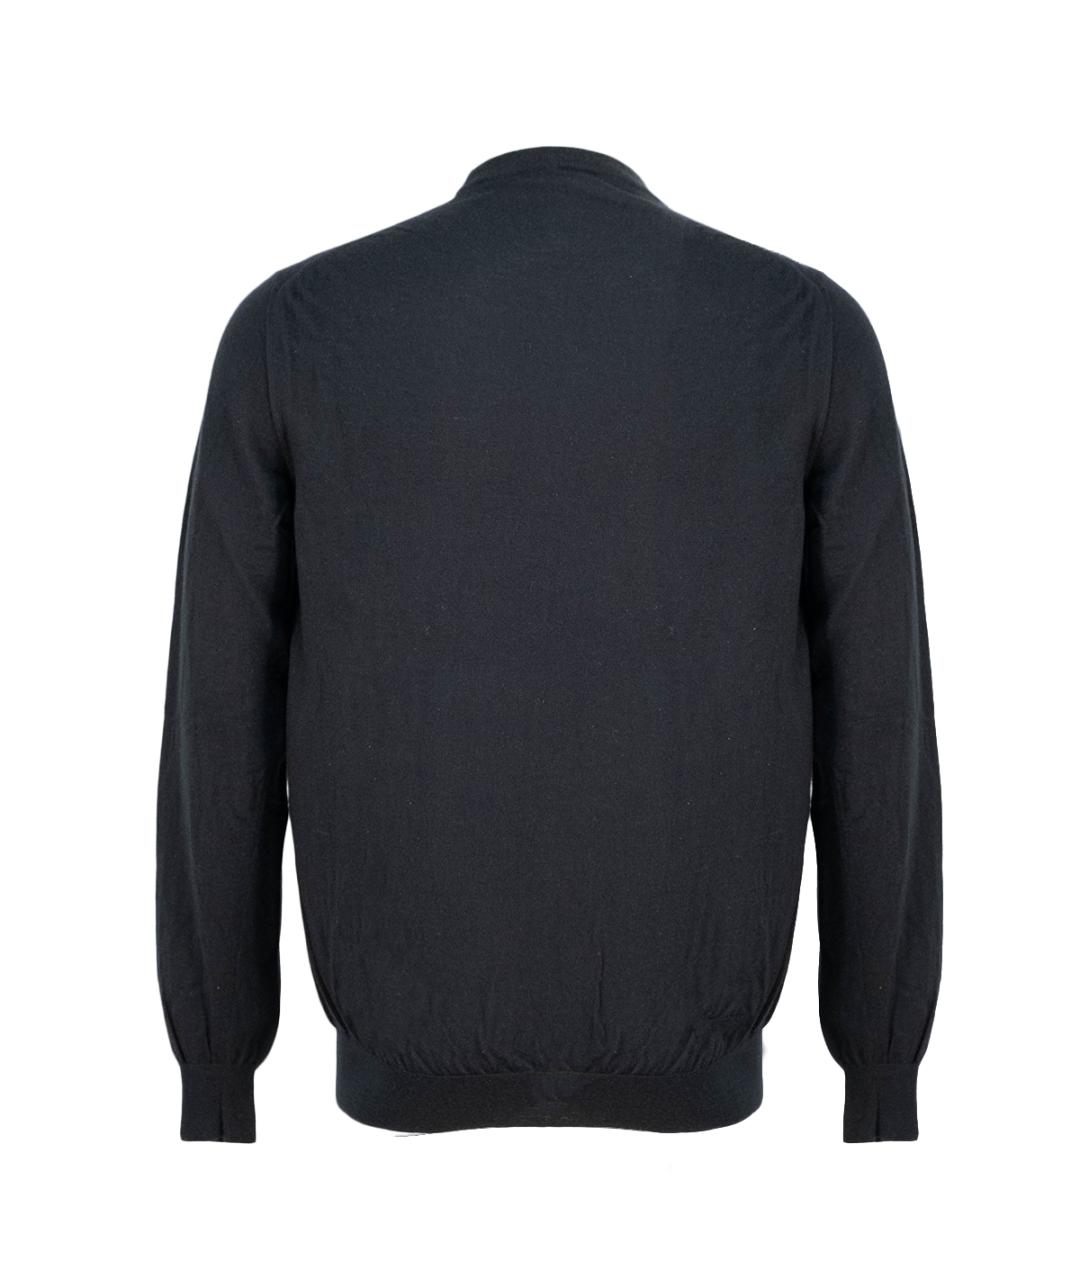 PAUL & SHARK Темно-синий кашемировый джемпер / свитер, фото 2